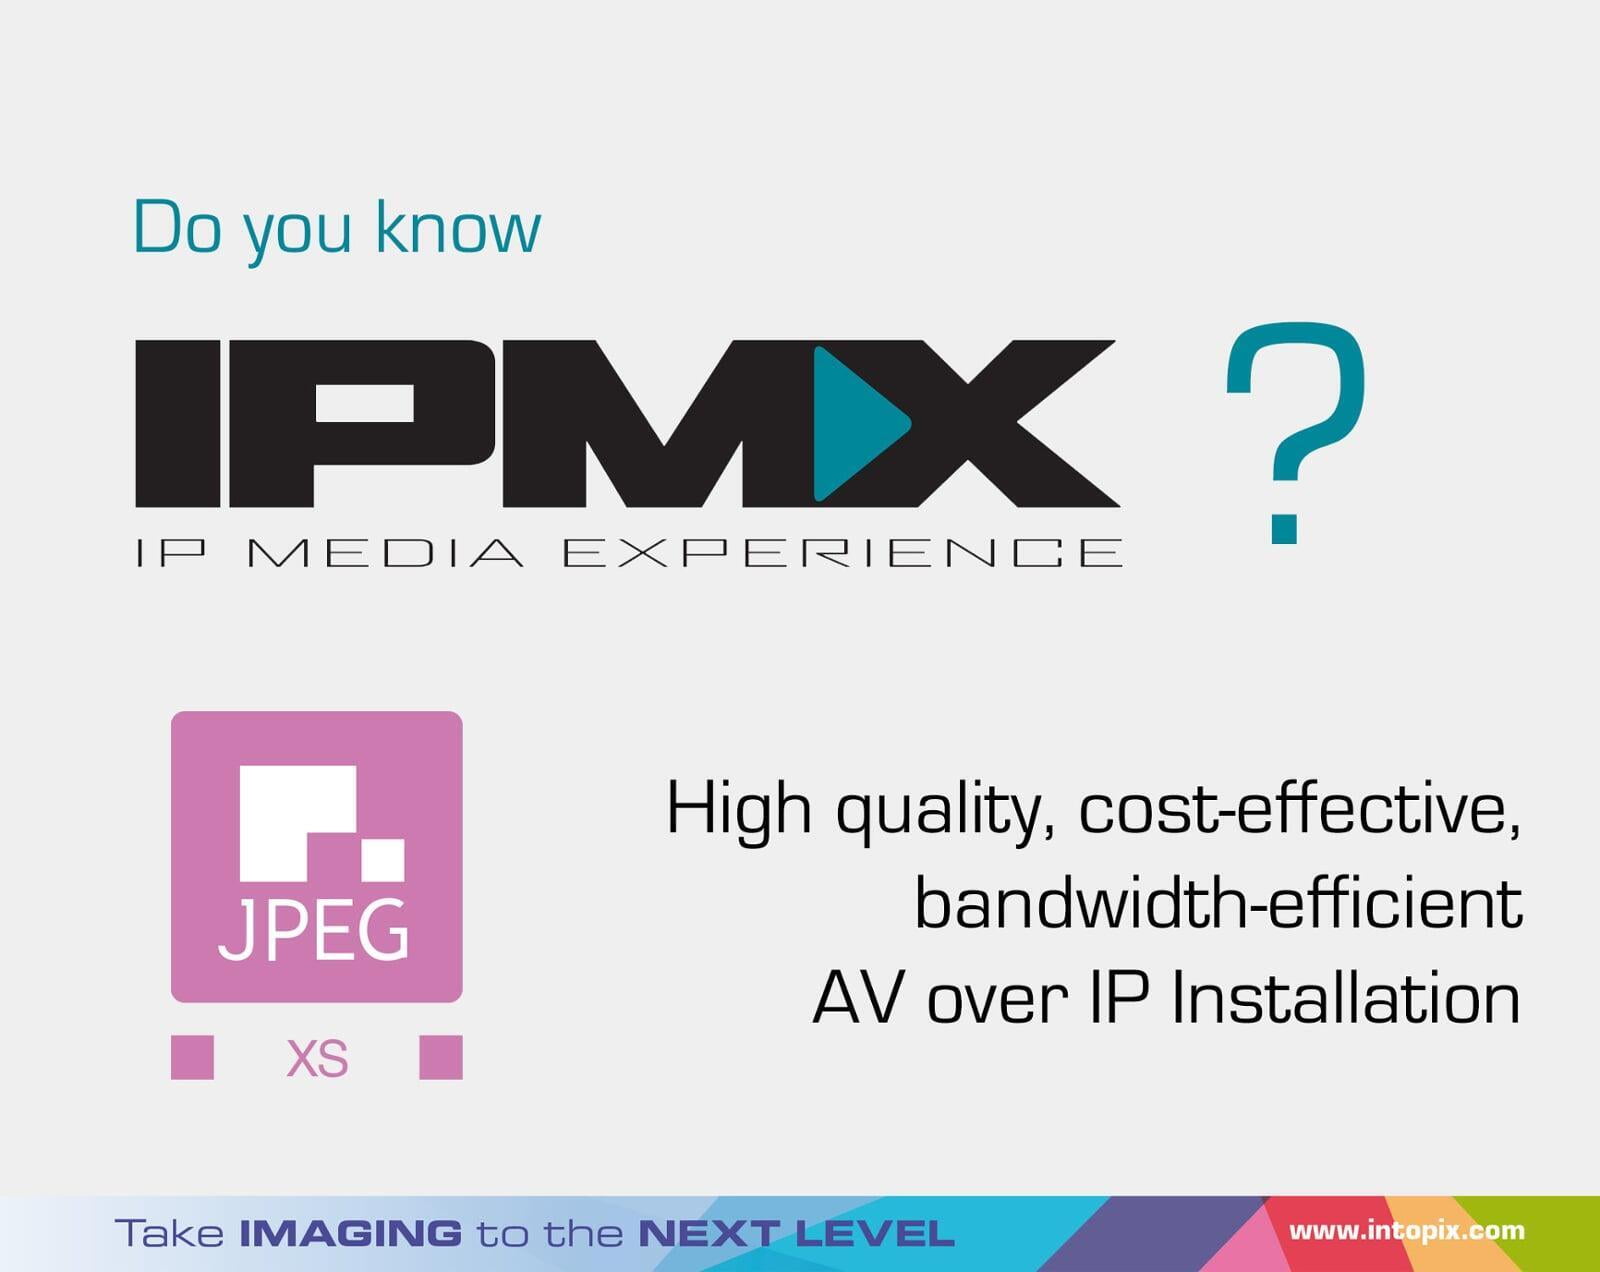 Savez-vous ce que signifie IPMX ?